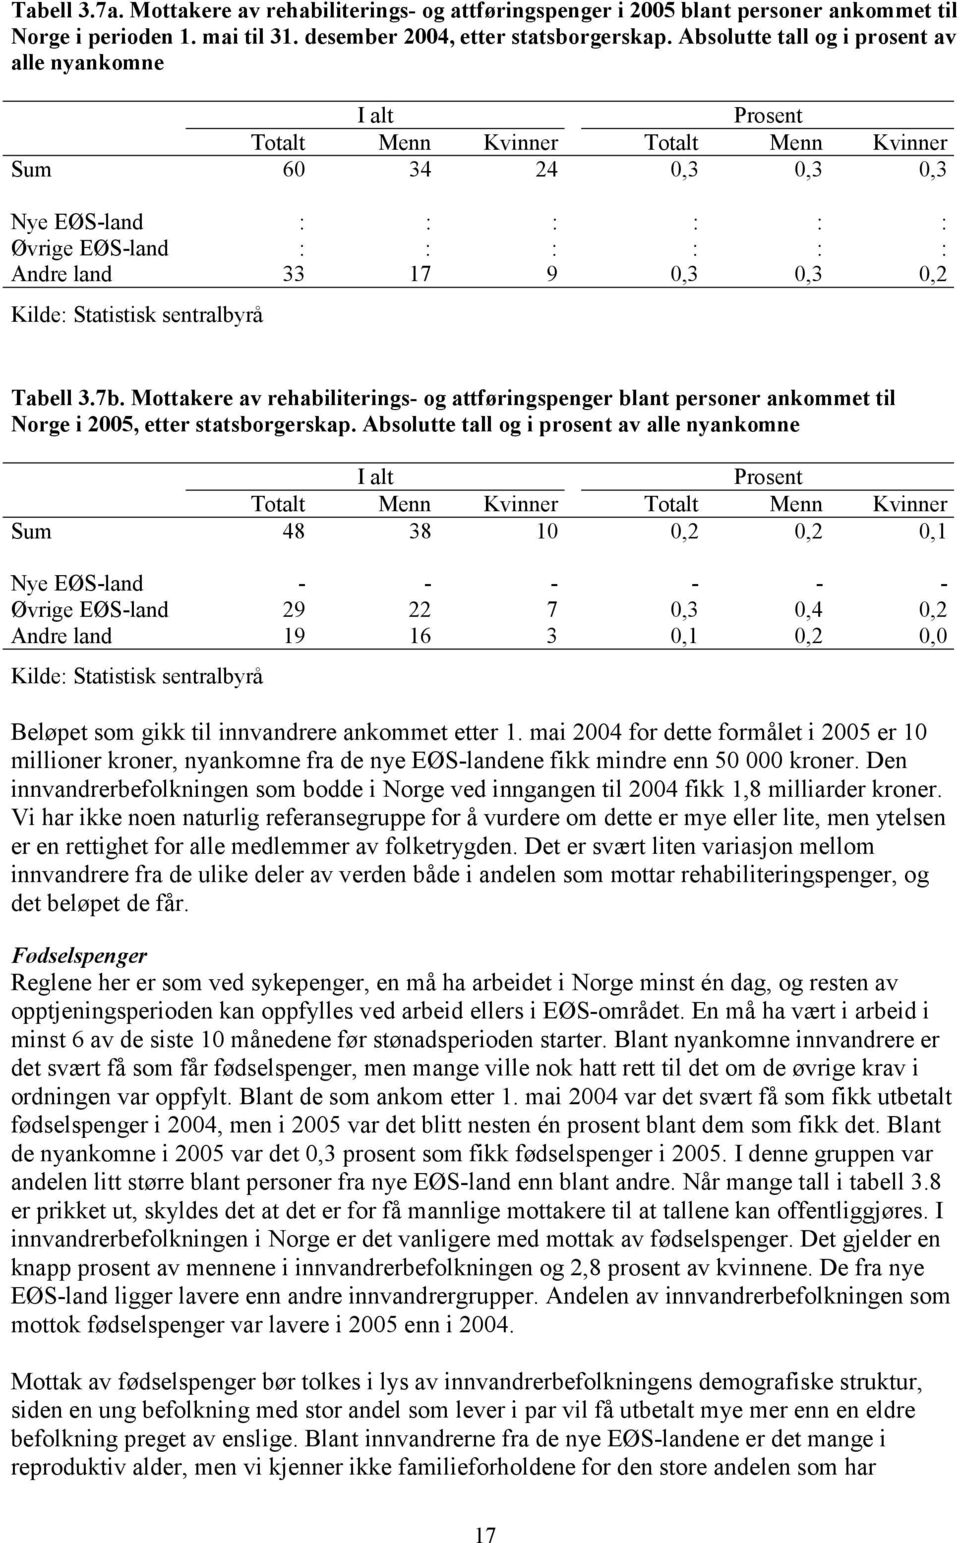 Mottakere av rehabiliterings- og attføringspenger blant personer ankommet til Norge i 2005, etter statsborgerskap.